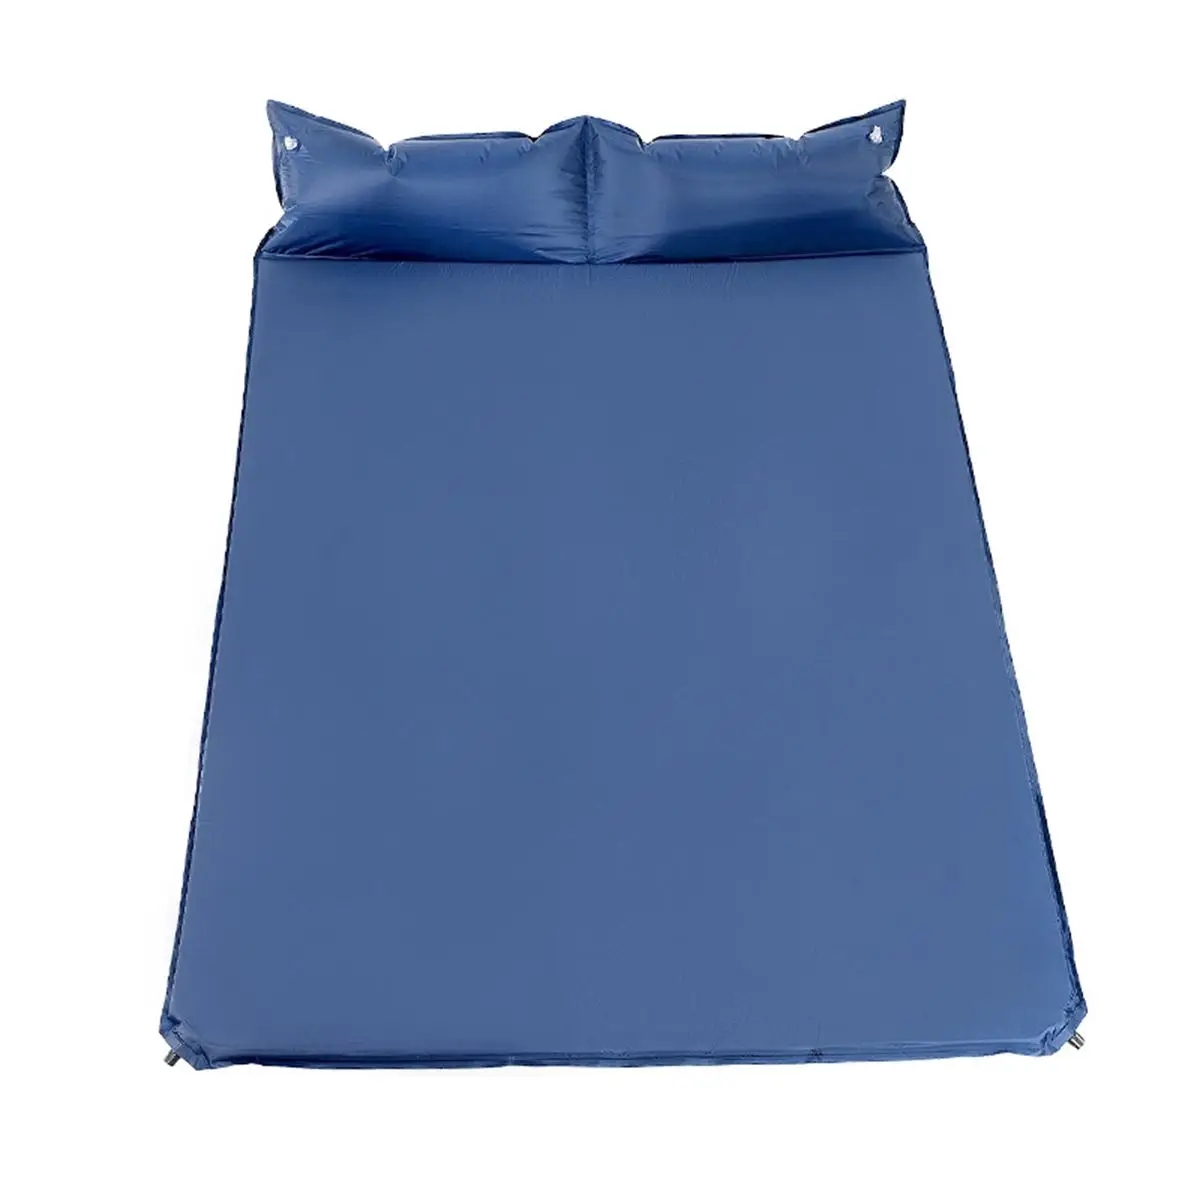 Портативный двойной Самонадувающийся кемпинговый коврик для сна подушка полиэстер влагонепроницаемый походный матрас подушки 190*130*3 см